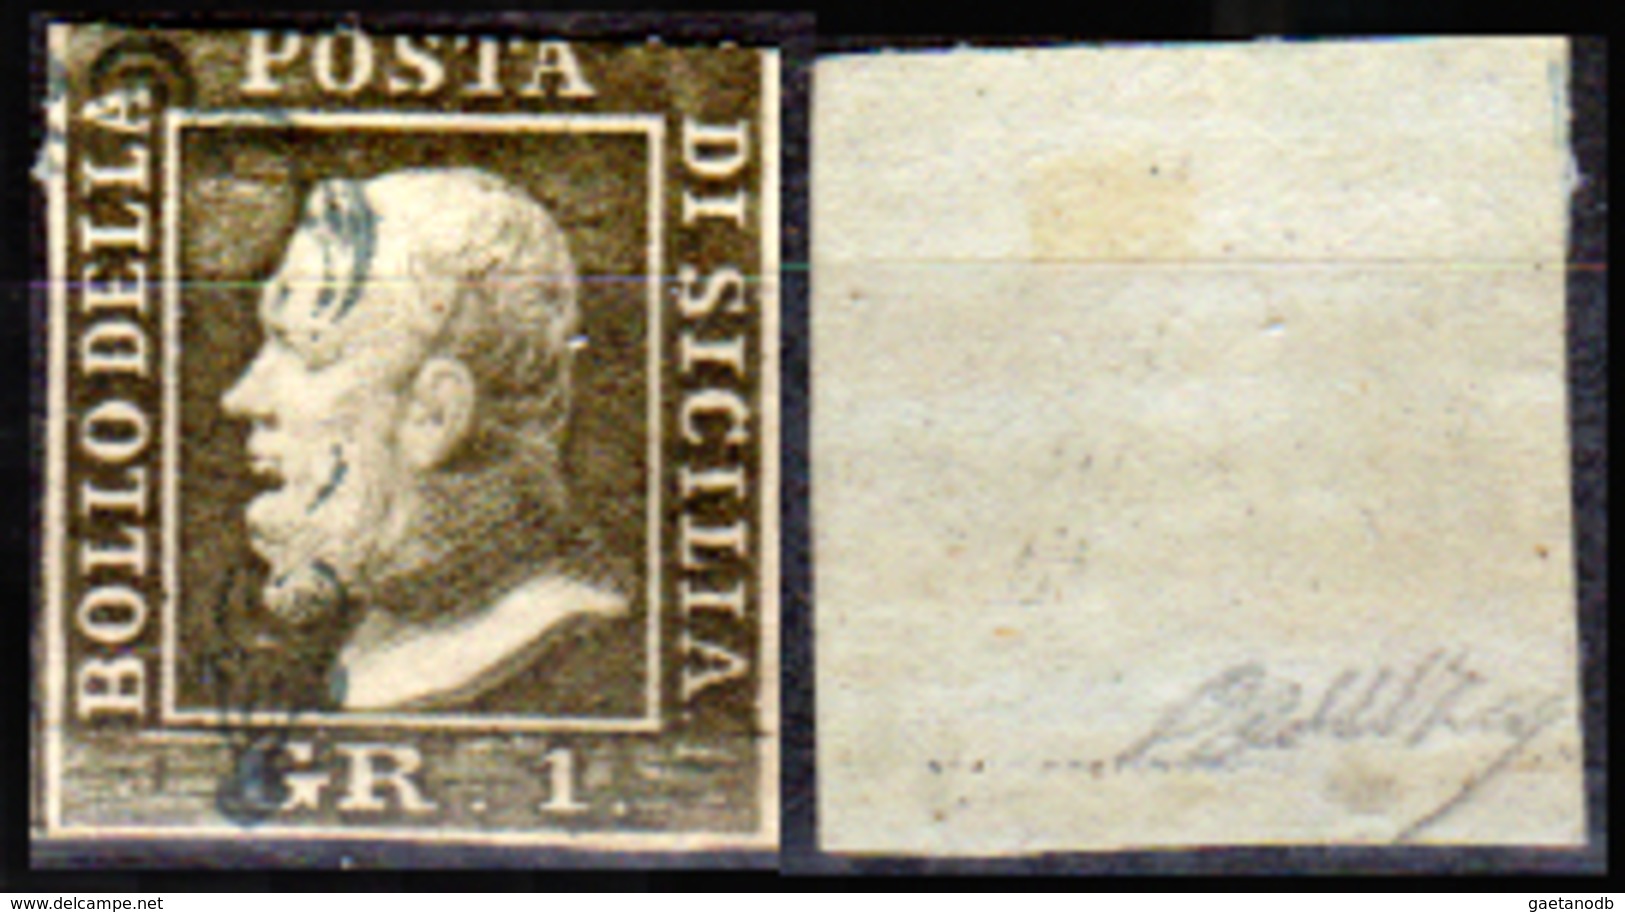 Sicilia-029 - Emissione 1859:  Sassone N. 4 (o) Used - Senza Difetti Occulti. - Sicilia